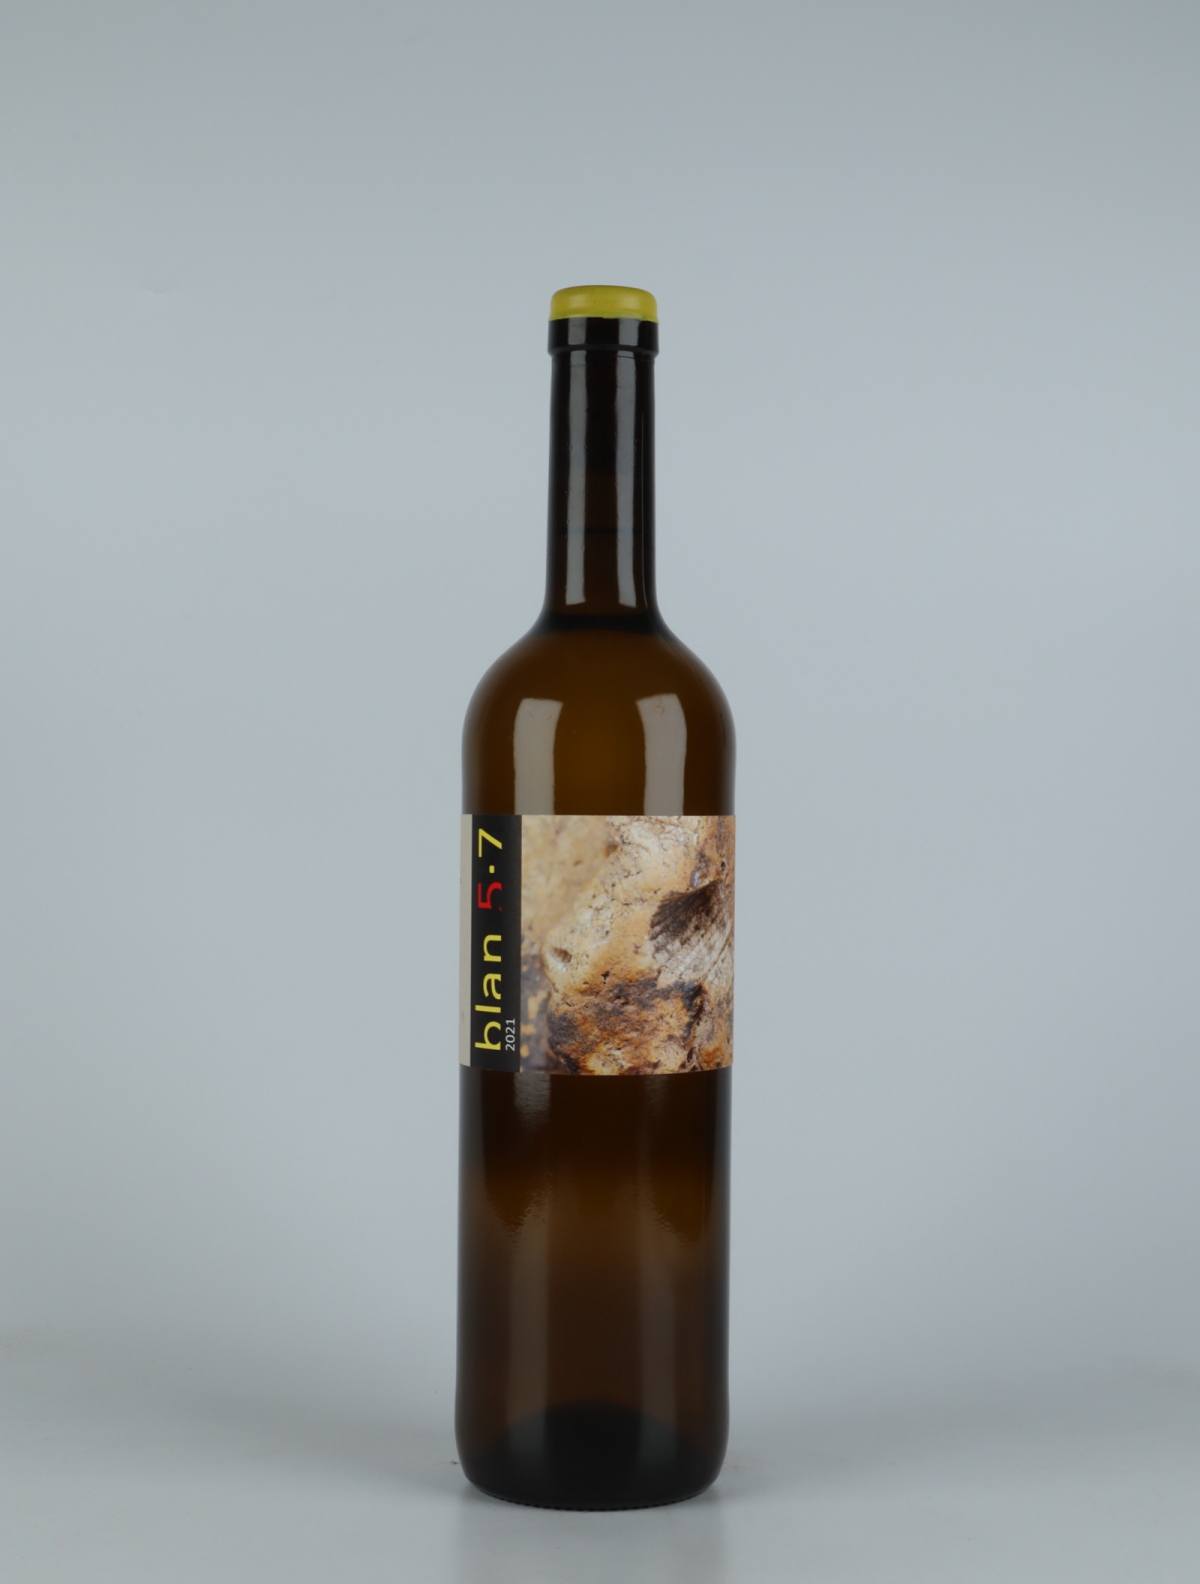 A bottle 2021 Blan 5-7 Orange wine from Jordi Llorens, Catalonia in Spain